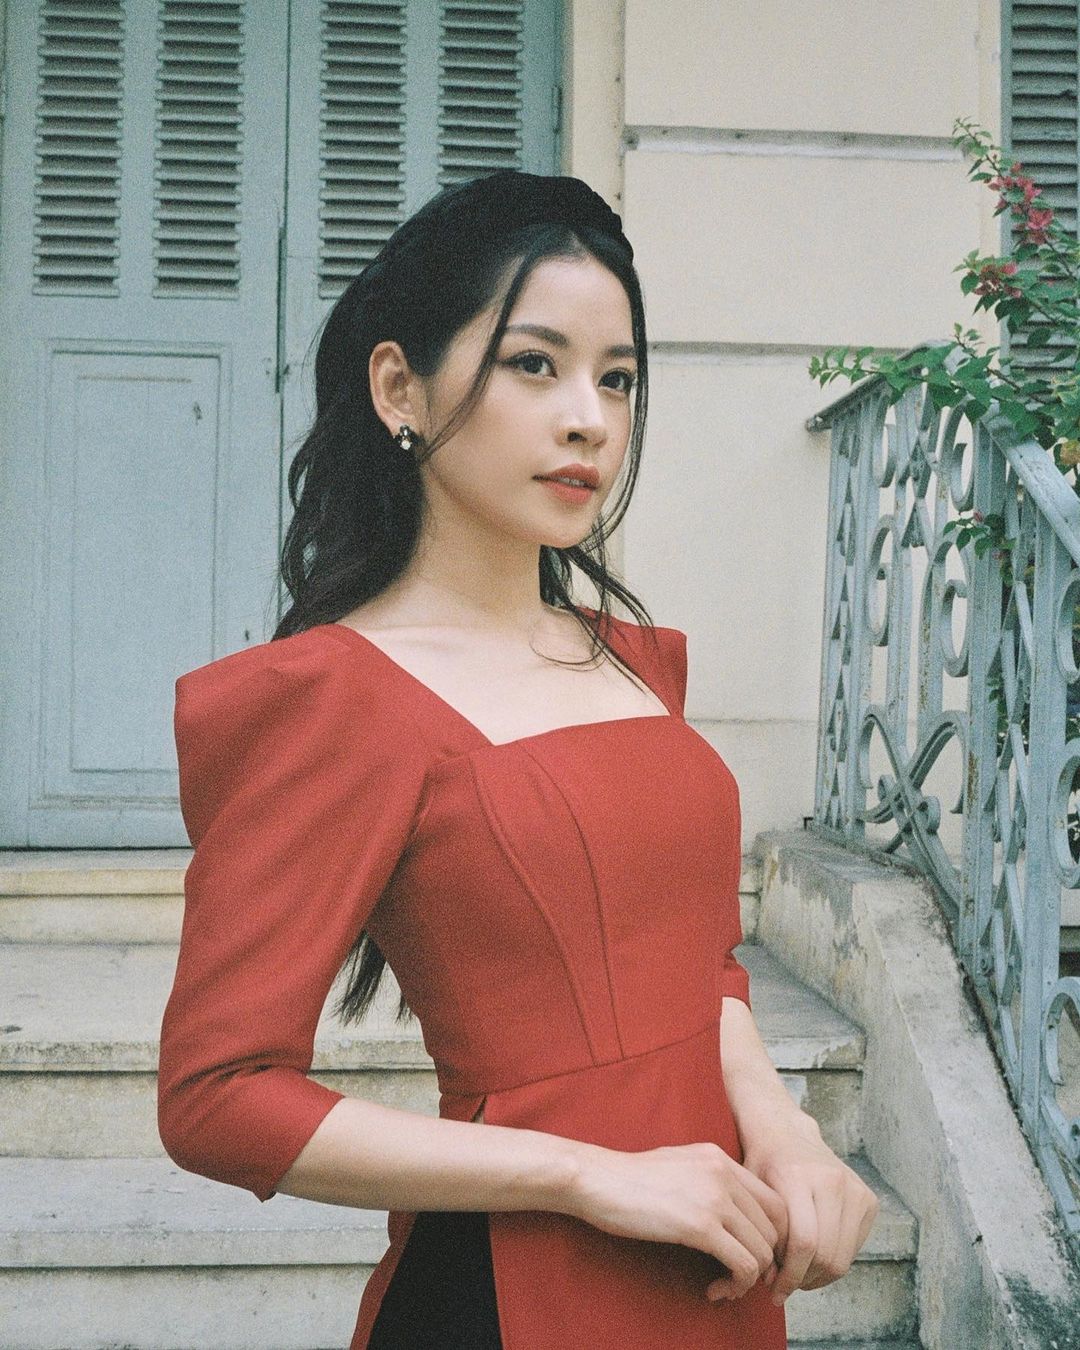 Áo dài là trang phục truyền thống của người Việt Nam, mang đầy đủ nét đẹp và sự trang nhã. Hình ảnh áo dài sẽ khiến bạn trở nên sang trọng và quyến rũ hơn bao giờ hết.